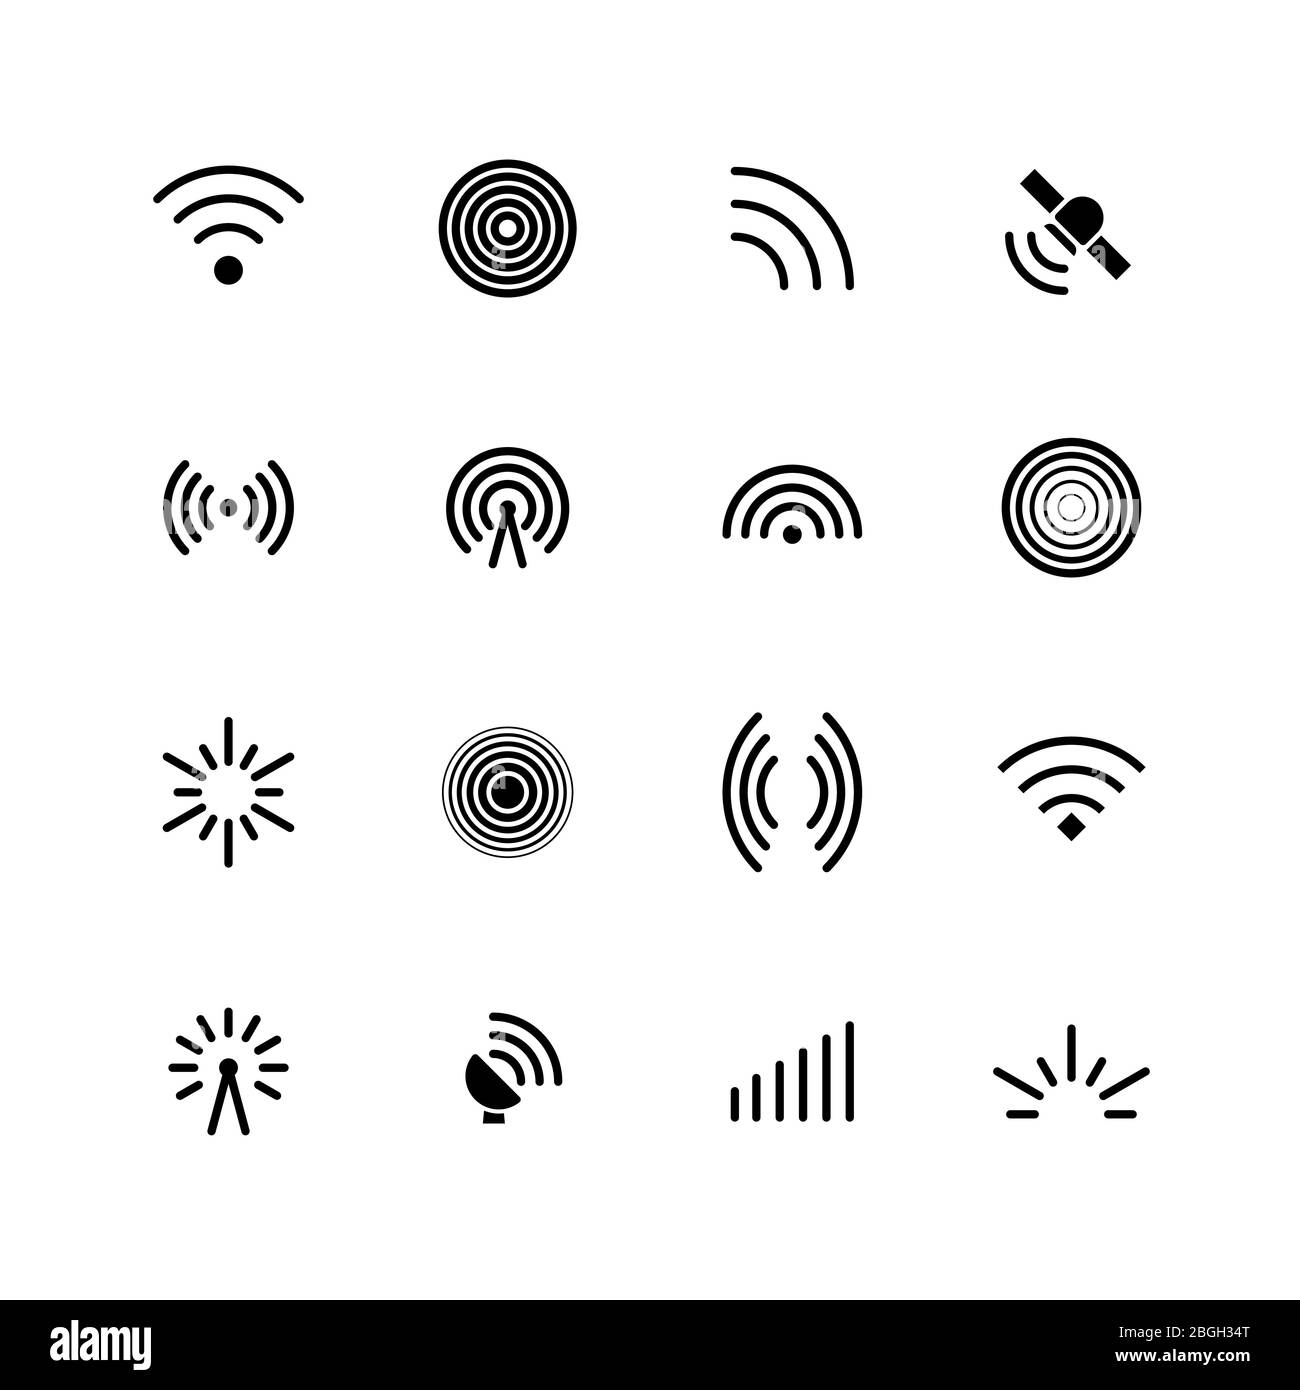 Icone dei segnali radio e wifi wireless. Antenna, segnale mobile e simboli vettoriali delle onde isolati. Immagine dell'antenna radio e della rete wireless Illustrazione Vettoriale